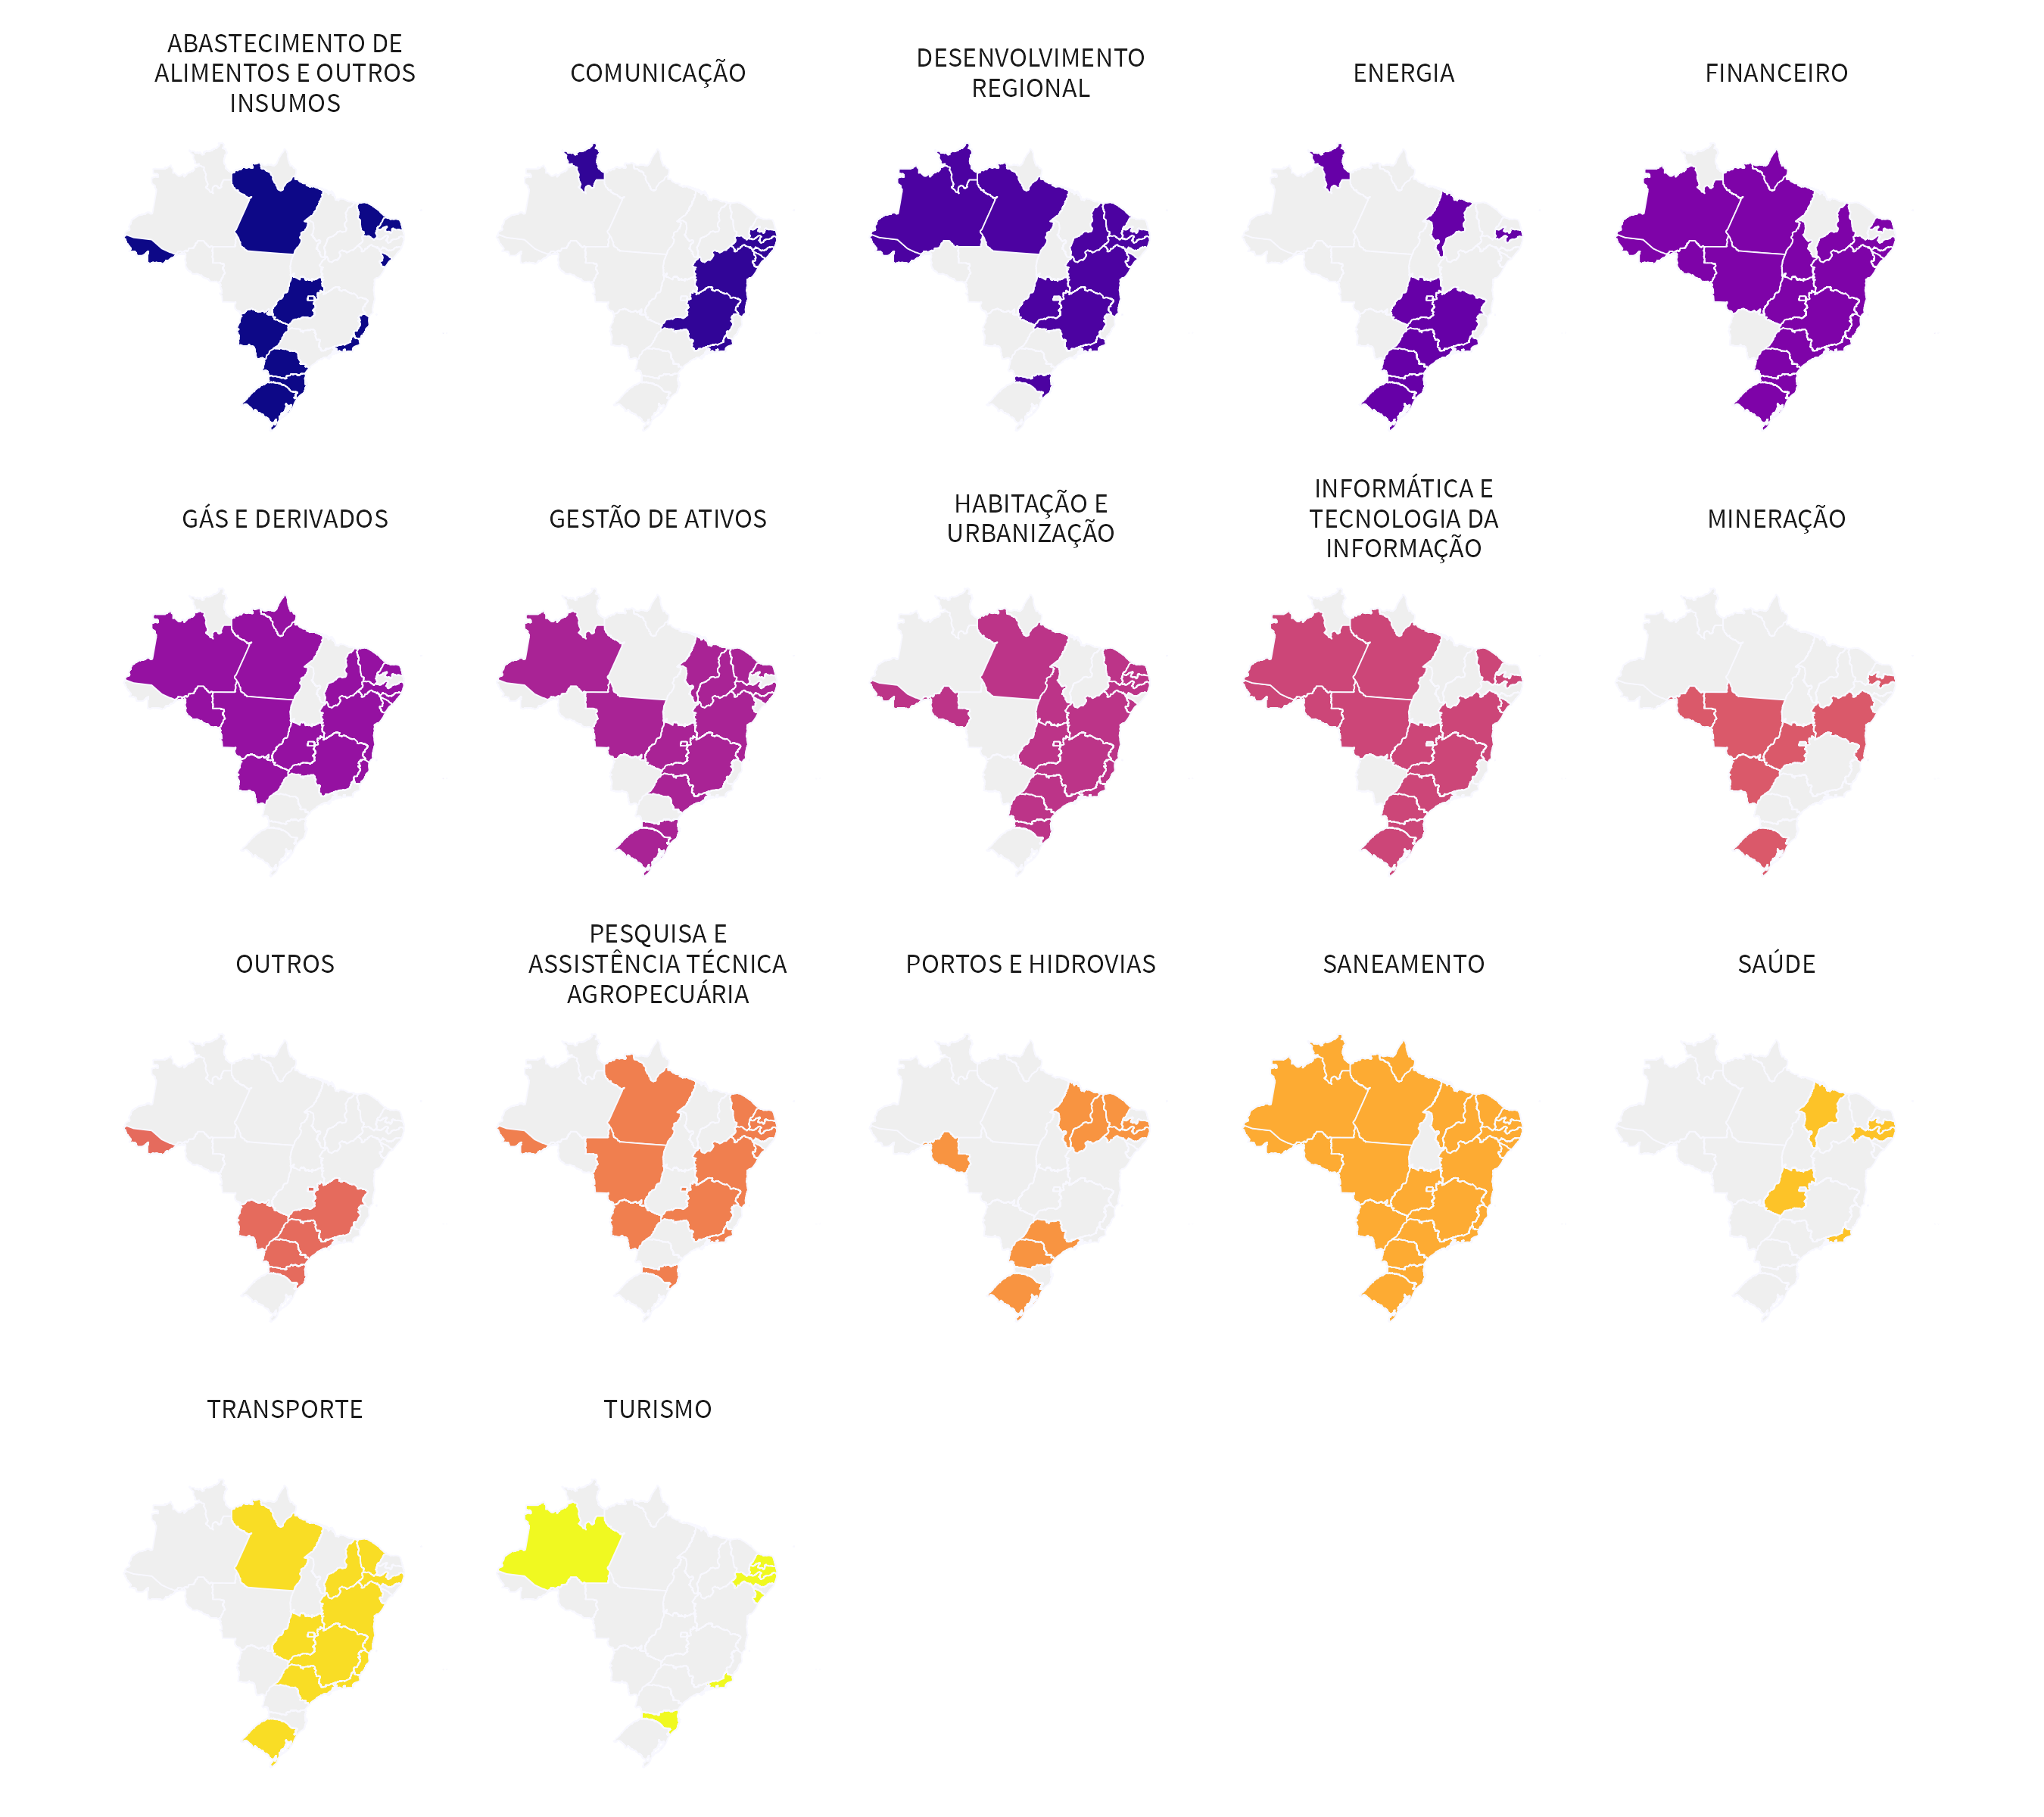 Visualização dos estados que possuem determinados tipos de empresas, por meio de vários pequenos mapas do Brasil, um para cada setor. Em cada mapinha, os estados que possuem empresas de determinado setor estão preenchidos com a cor que representa o setor.